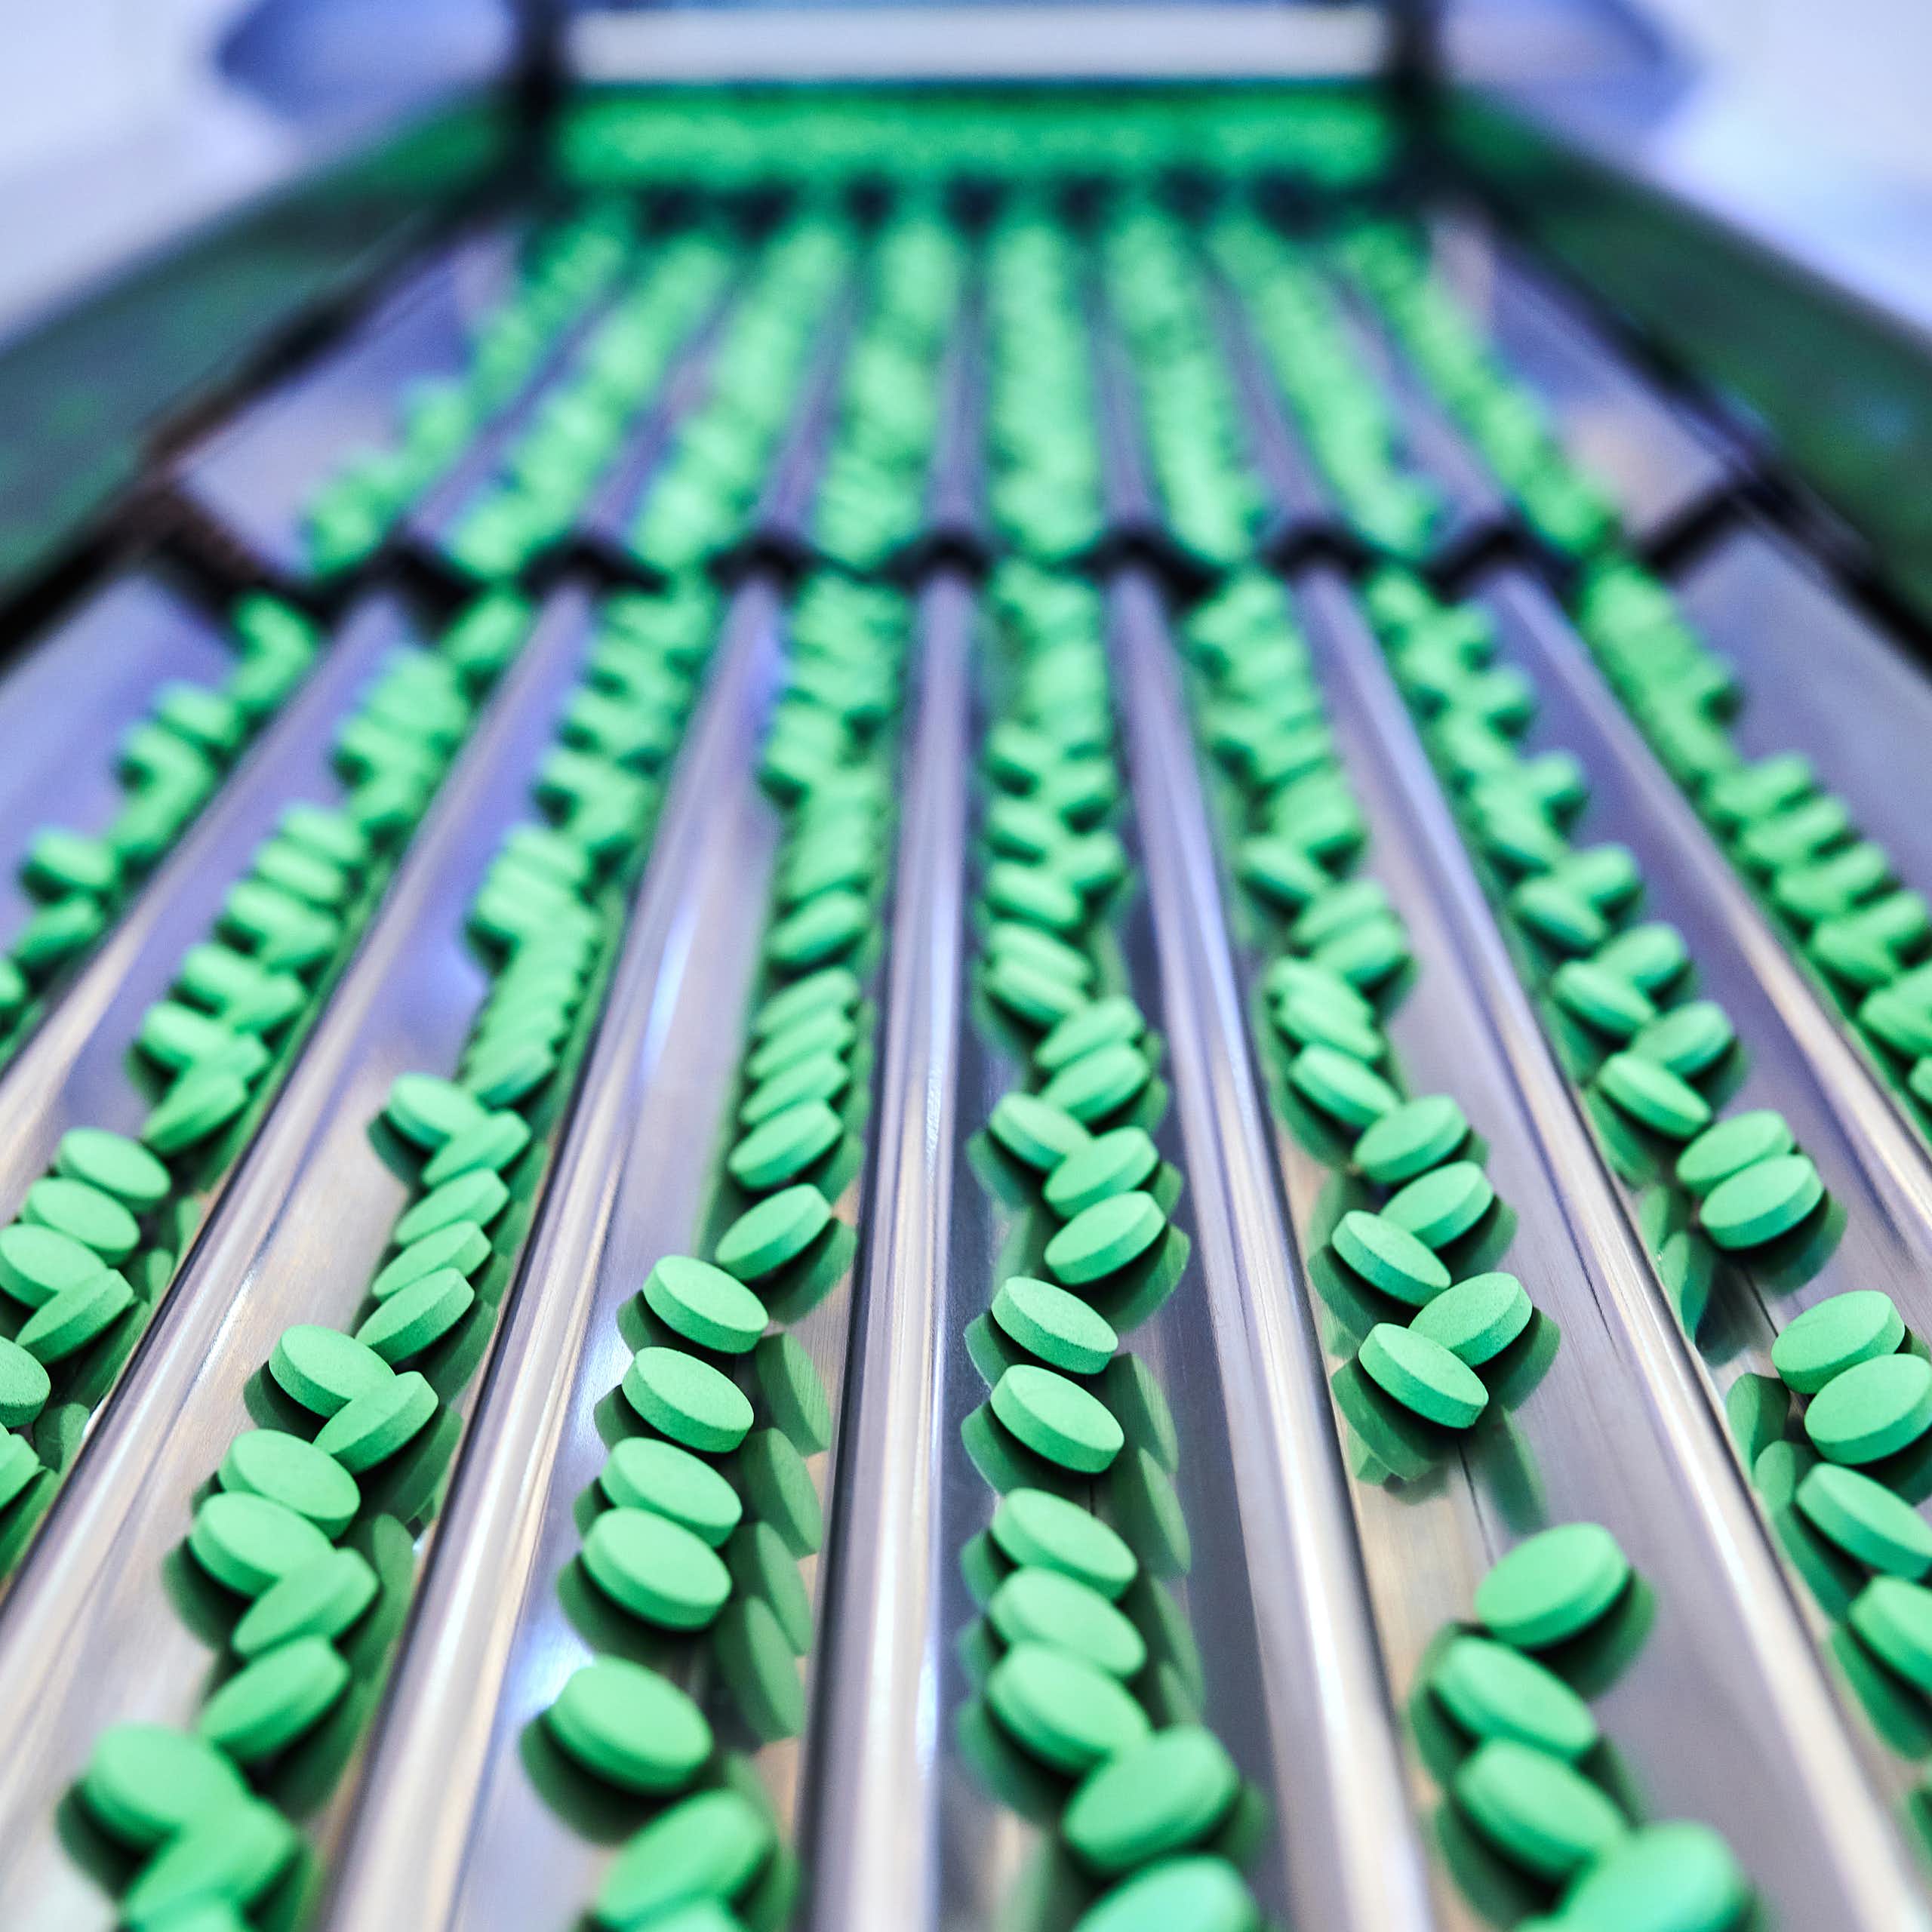 A conveyor belt of green pills 